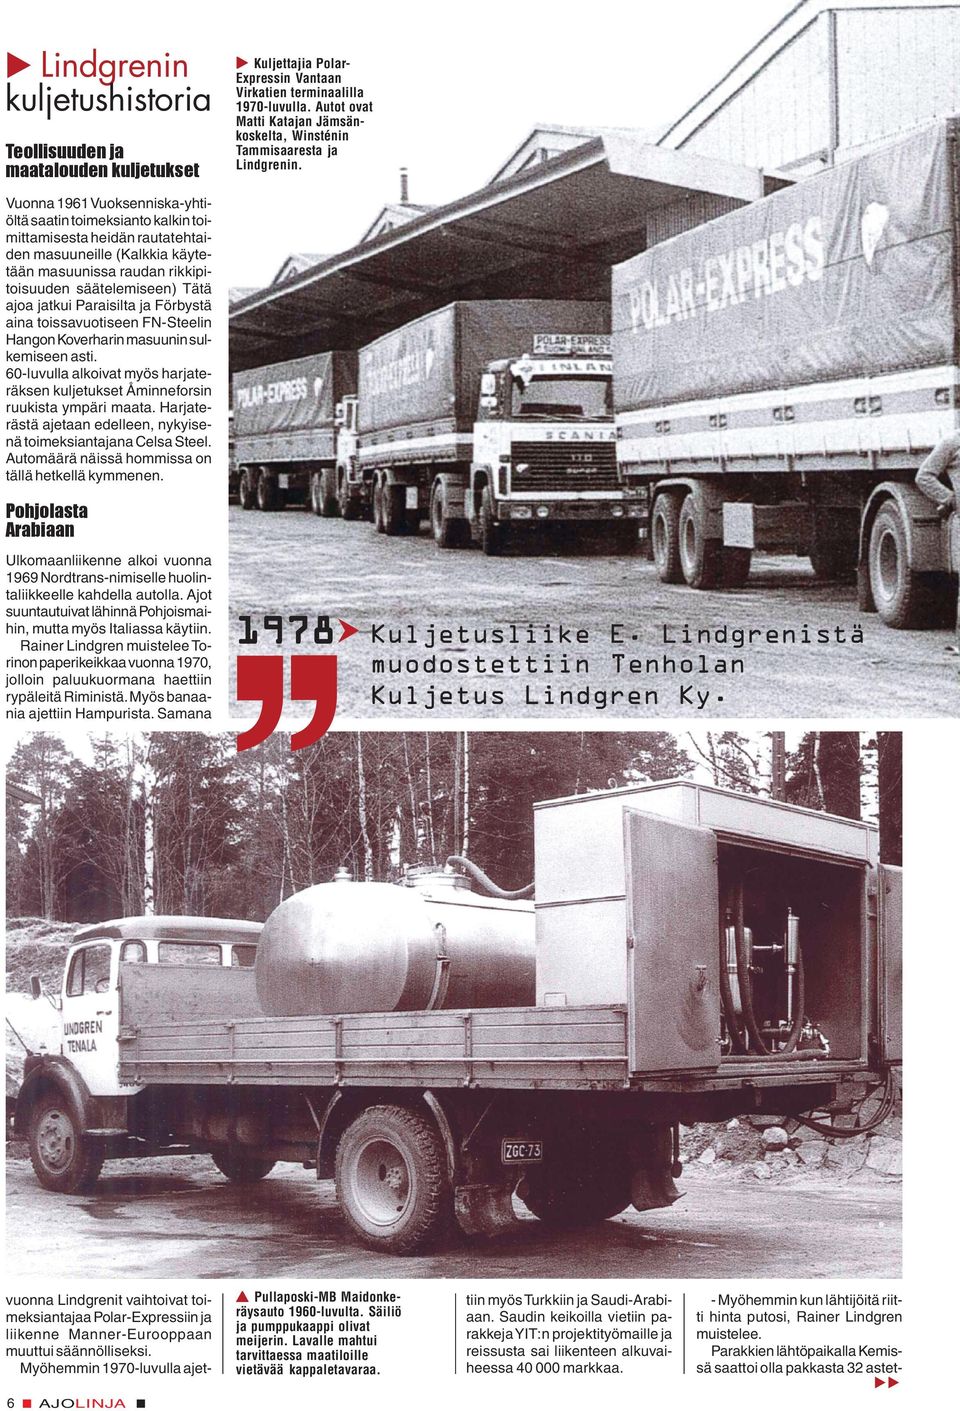 60-luvulla alkoivat myös harjateräksen kuljetukset Åminneforsin ruukista ympäri maata. Harjaterästä ajetaan edelleen, nykyisenä toimeksiantajana Celsa Steel.